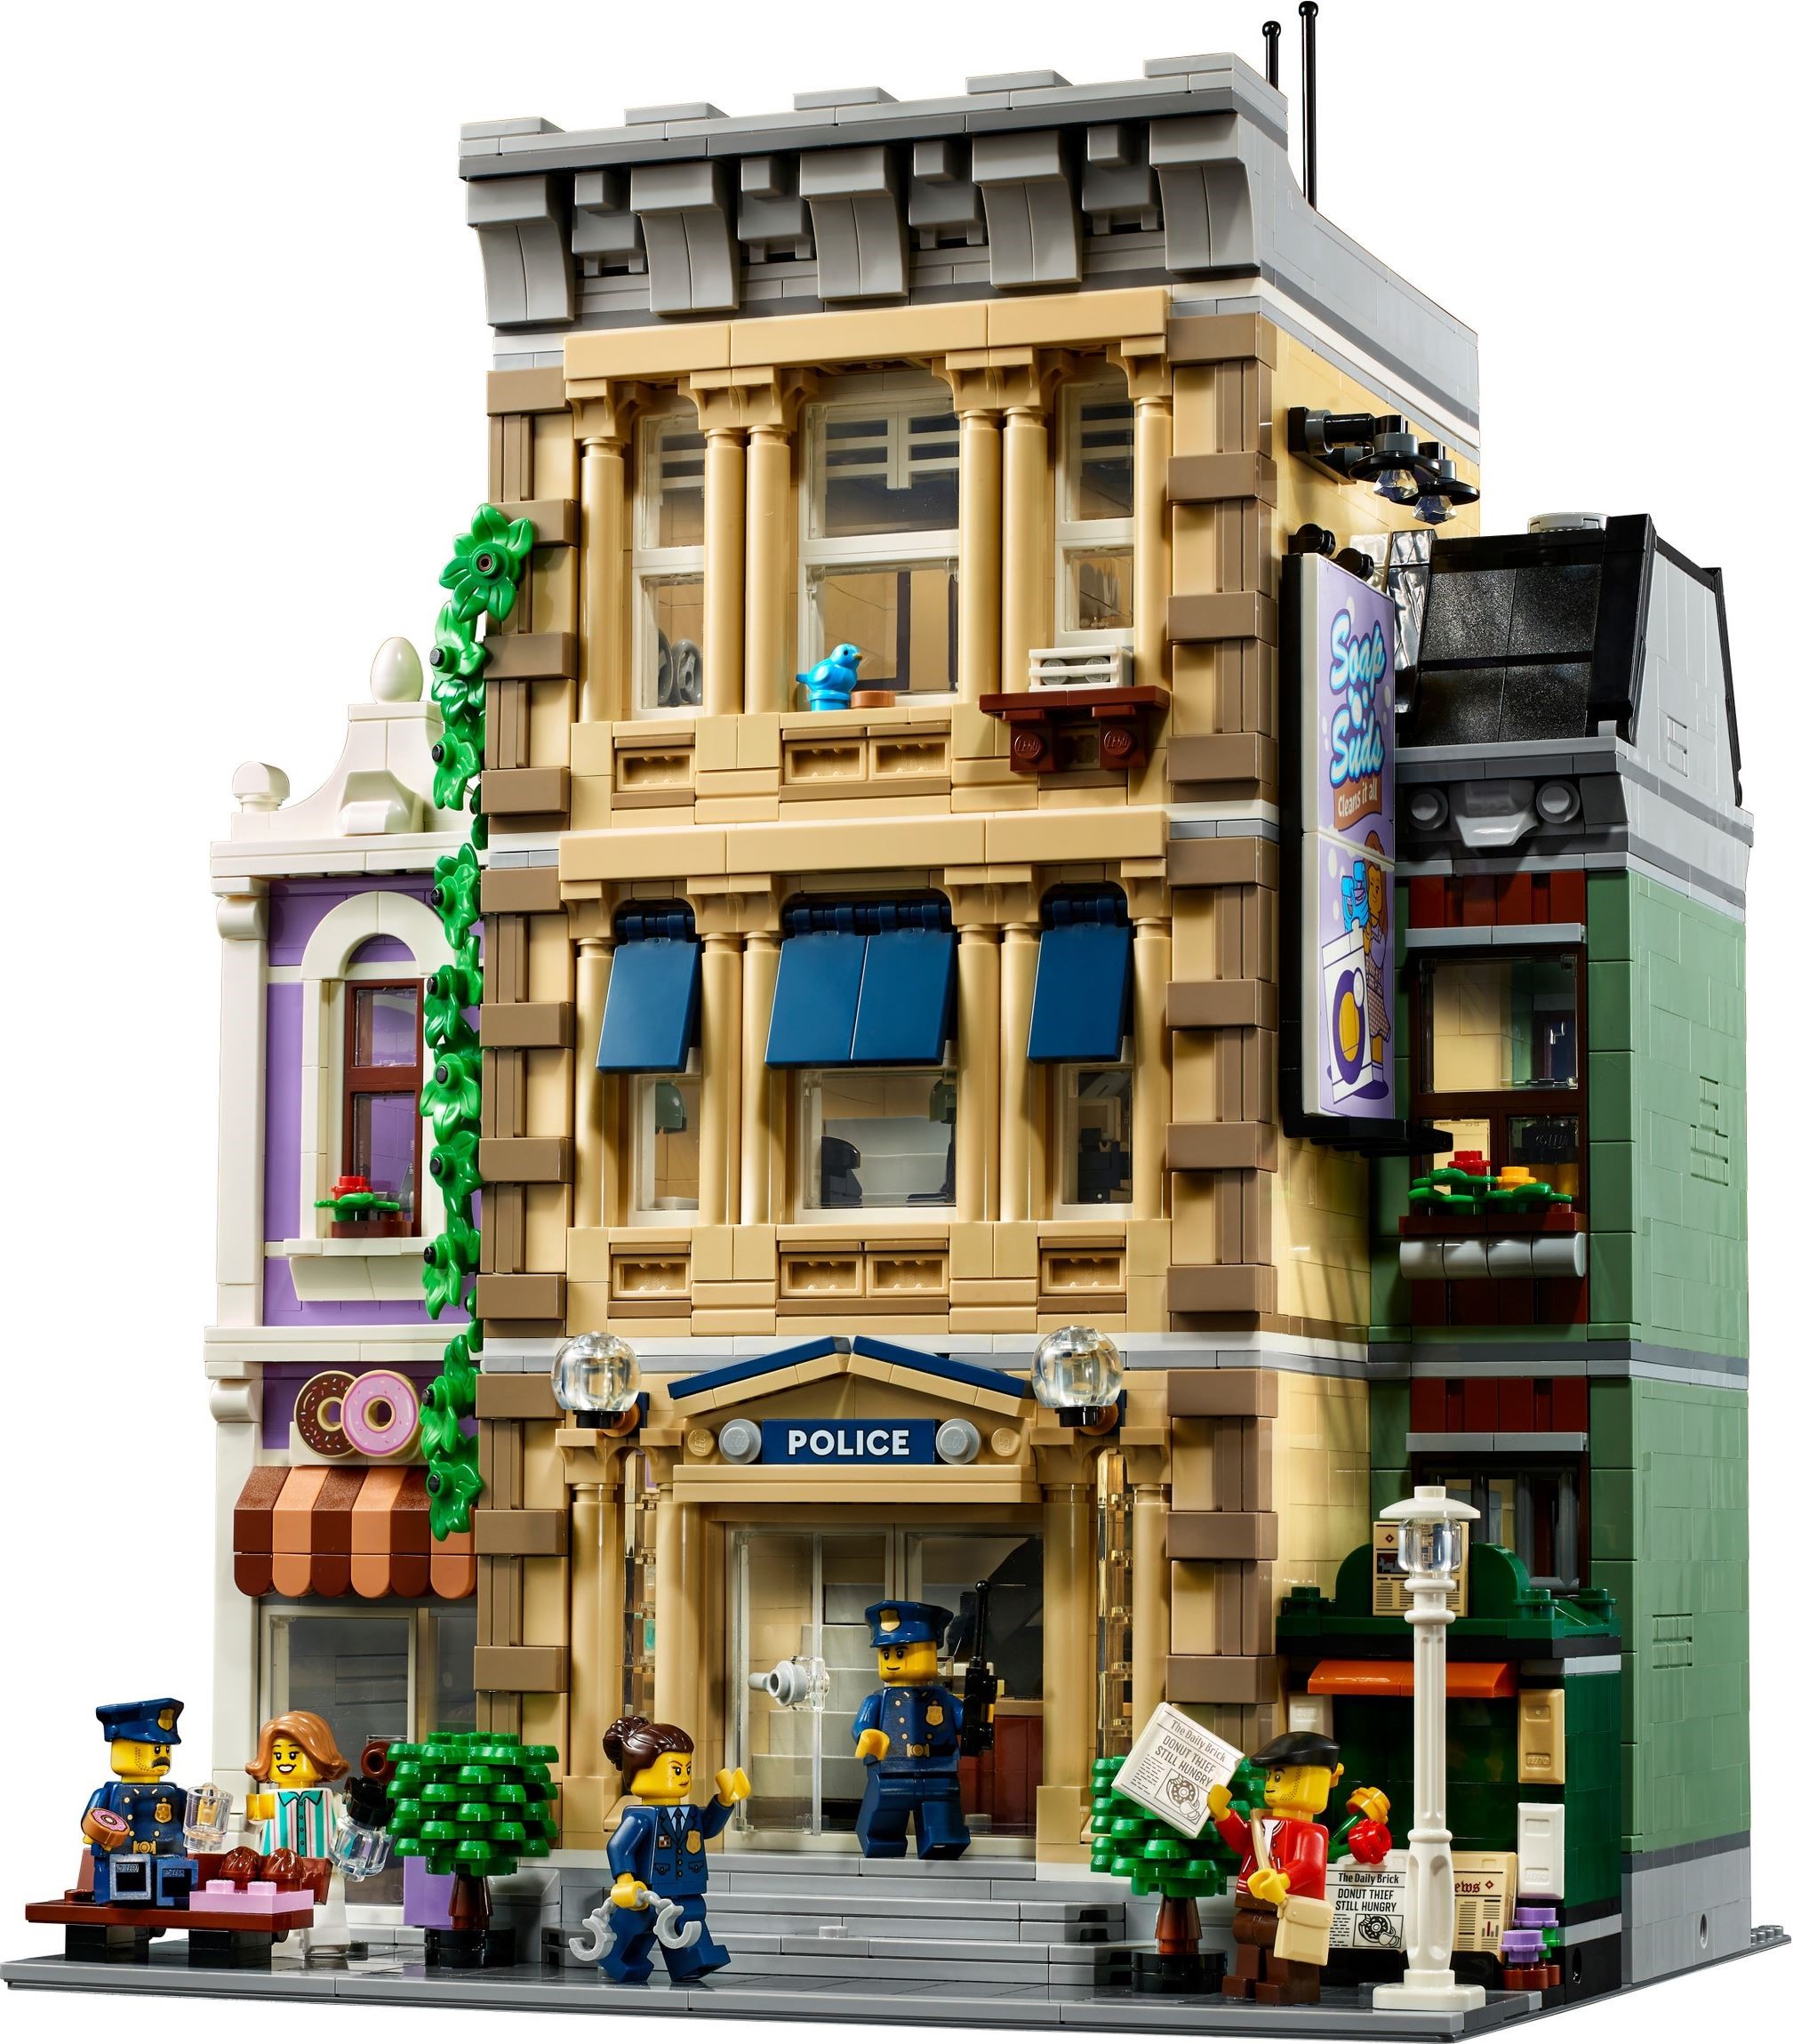 Novità LEGO, recensioni sui set e ultime offerte VIP - Brick Fanatics